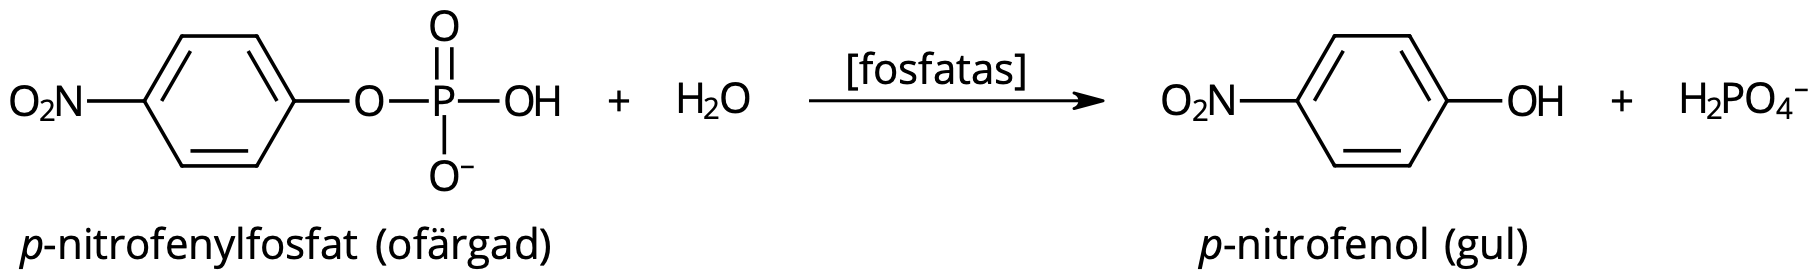 p-nitrofenylfosfat (ofärgad) → p-nitrofenol (gul).